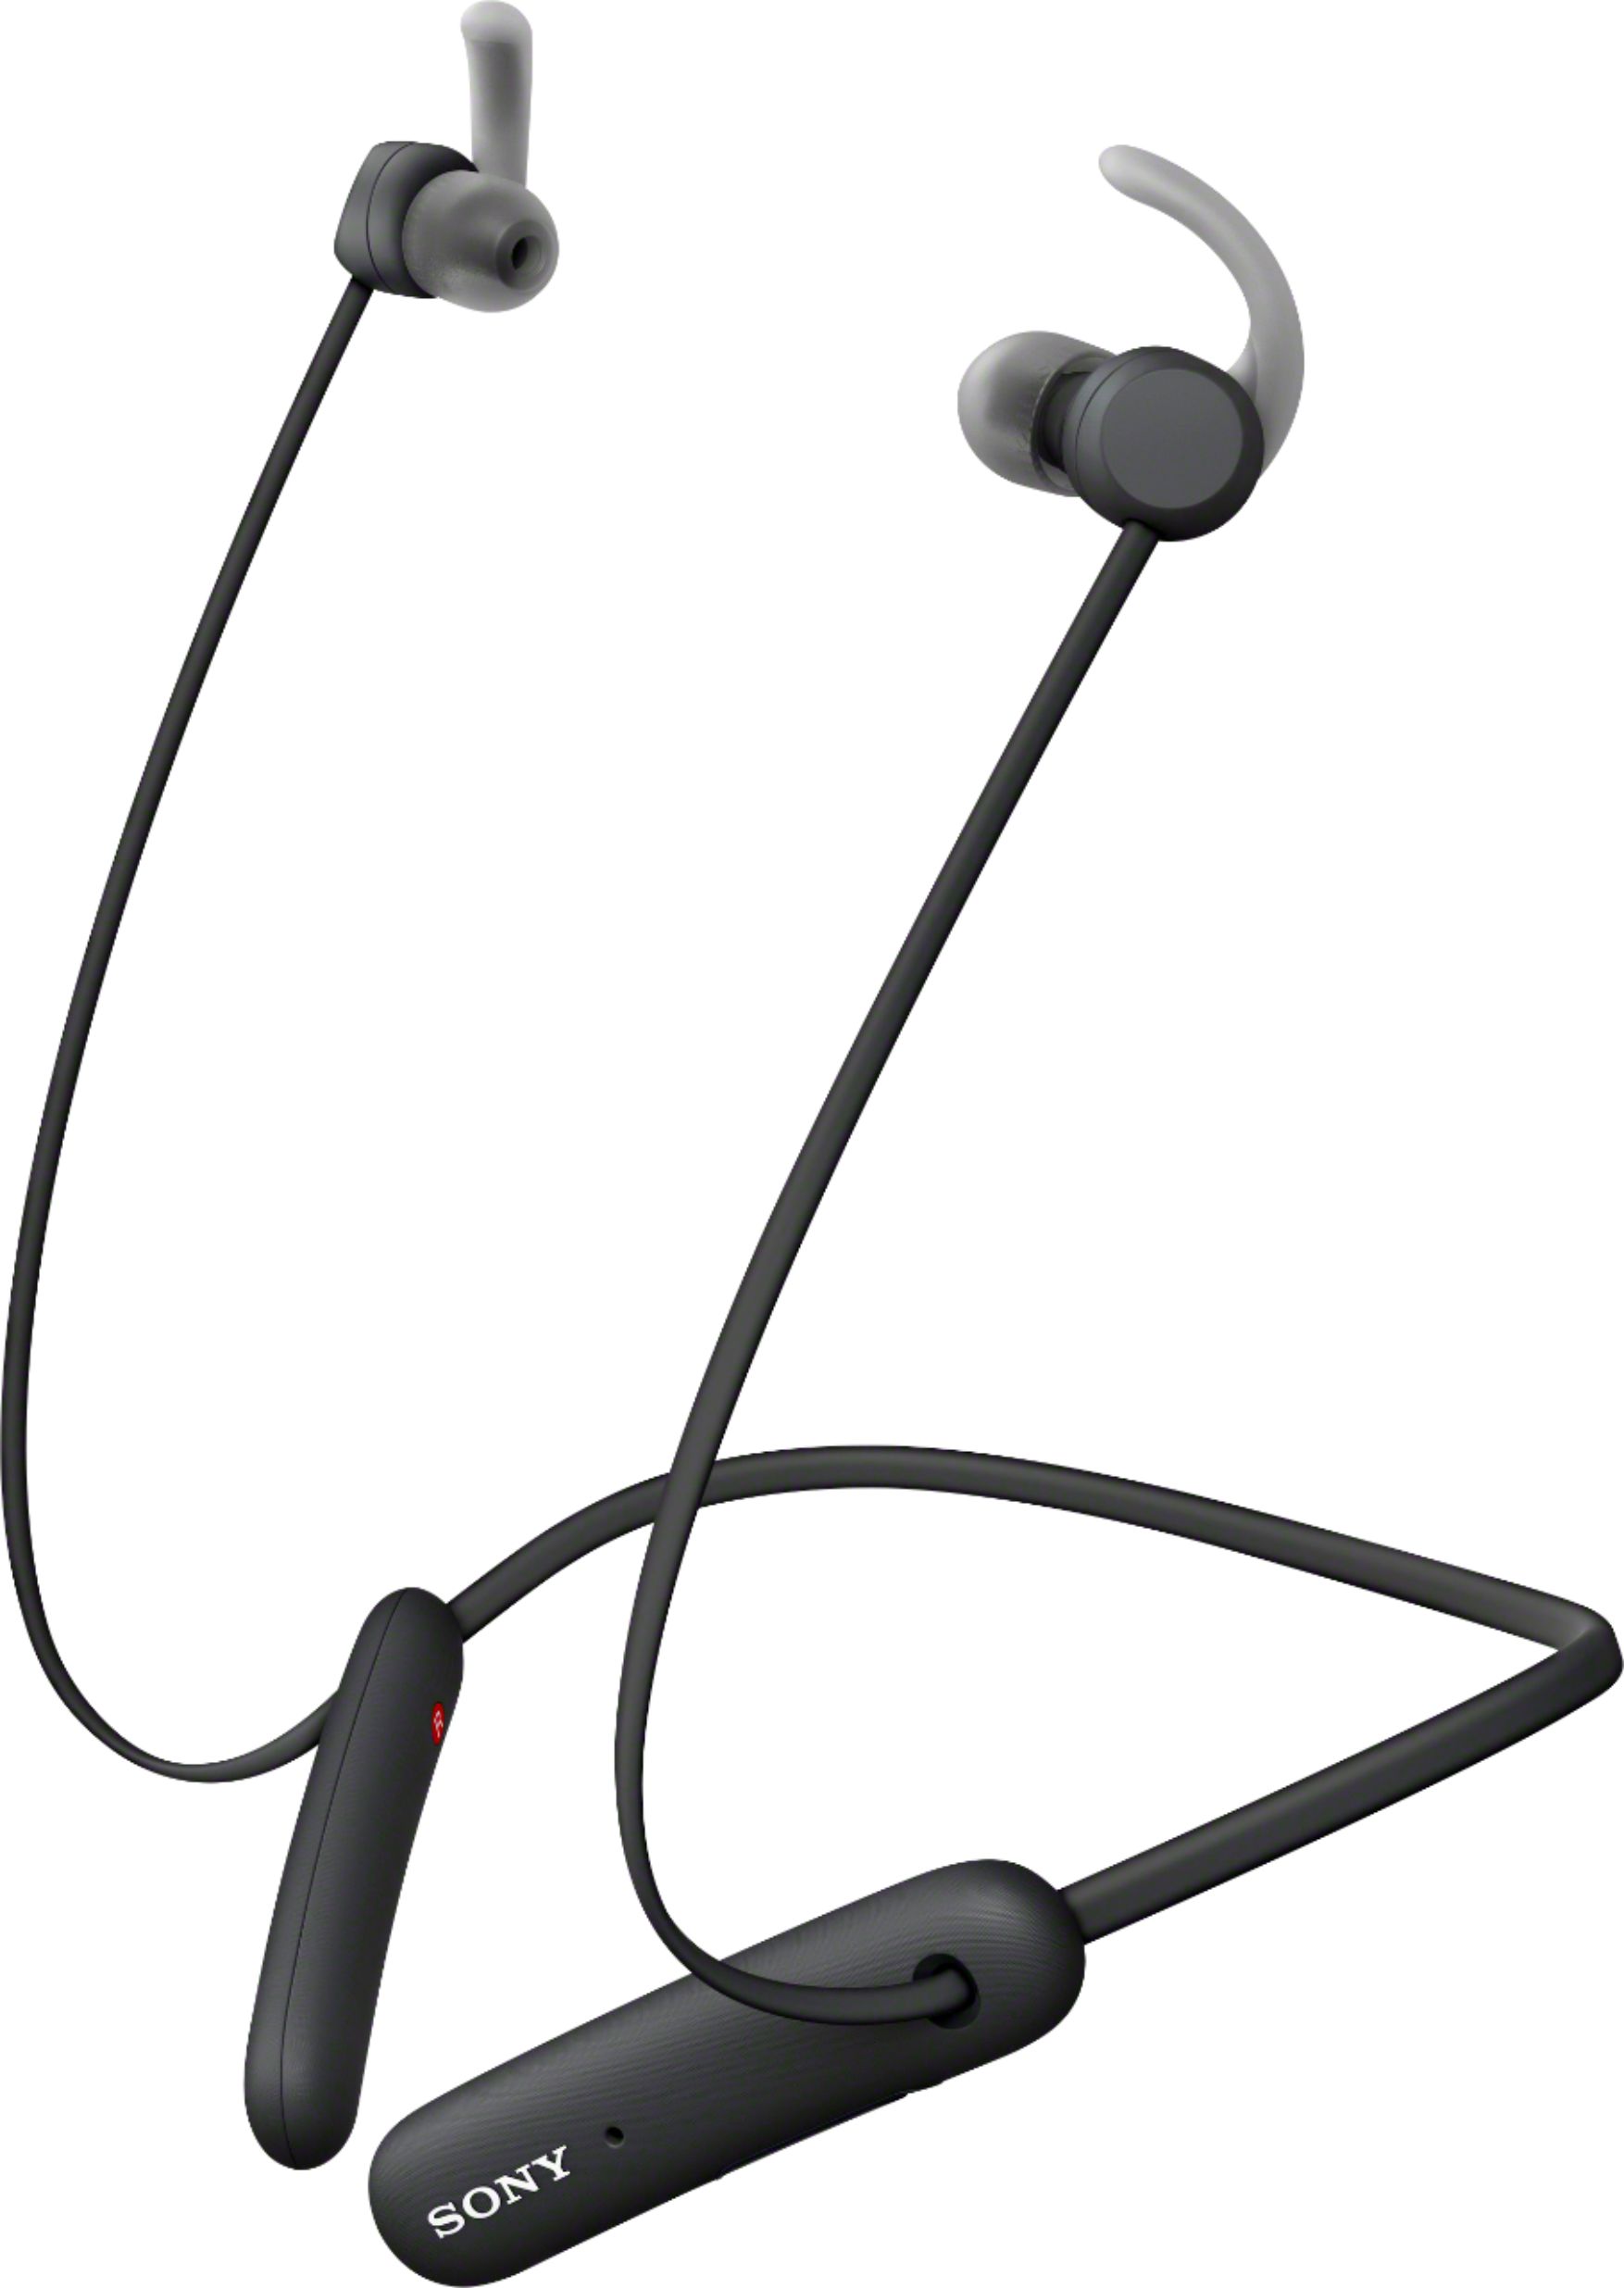 Sony Wi Sp510 Wireless In Ear Headphones Black Wisp510 B Best Buy